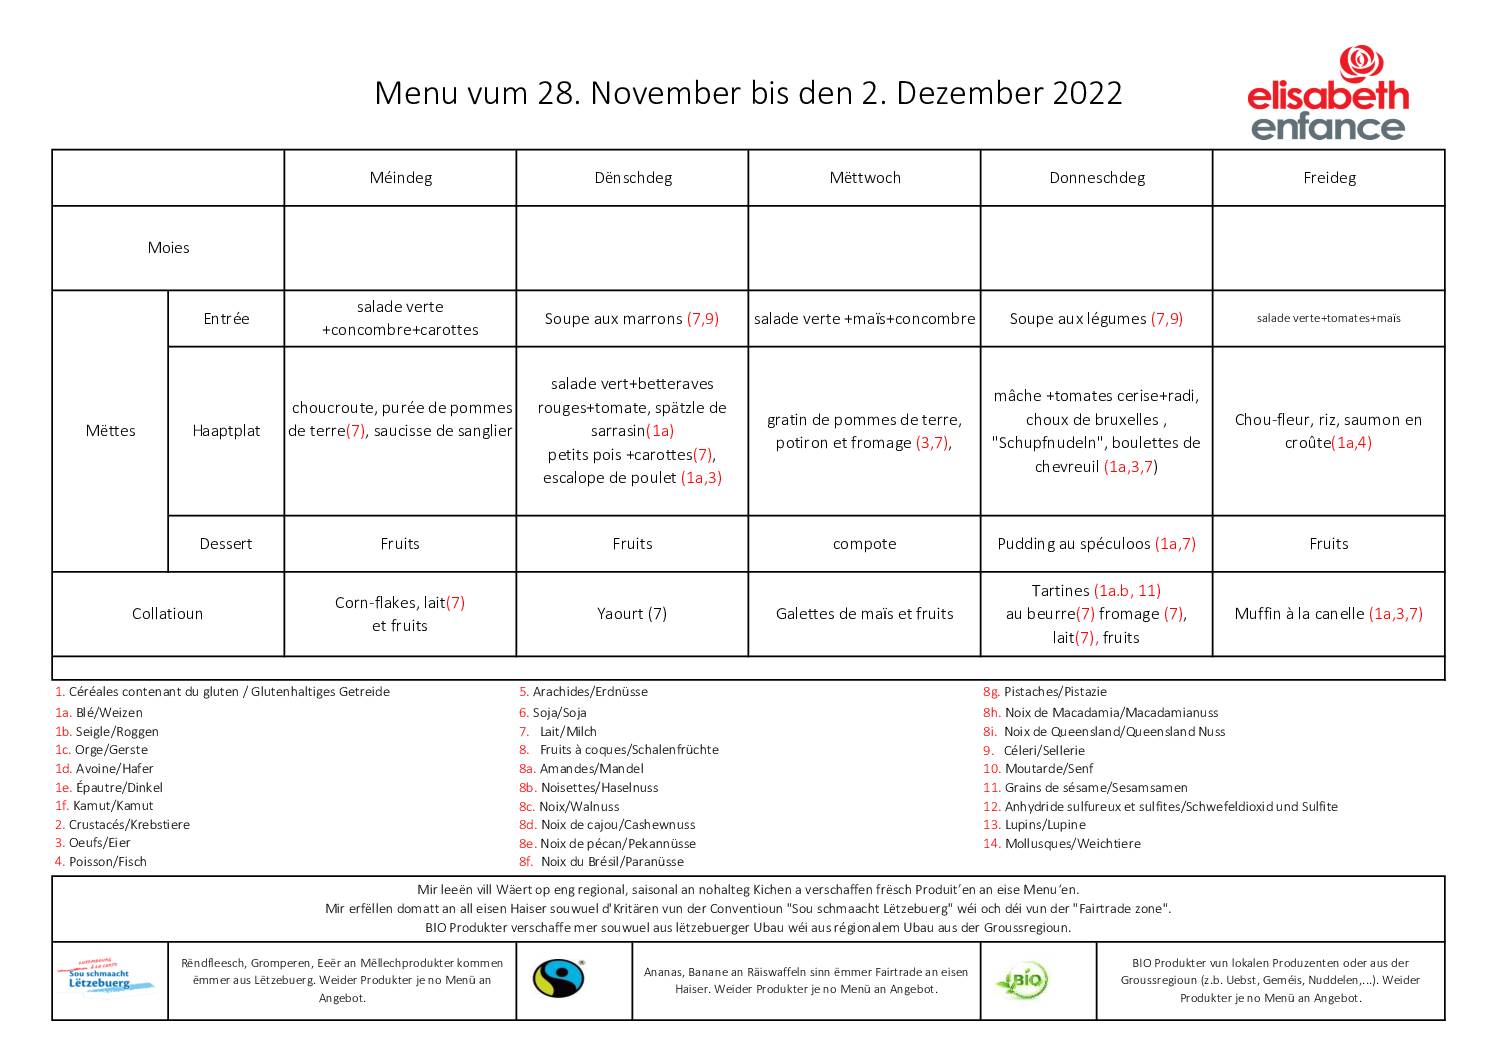 menus de la semaine du 28 novembre au 2 décembre 2022